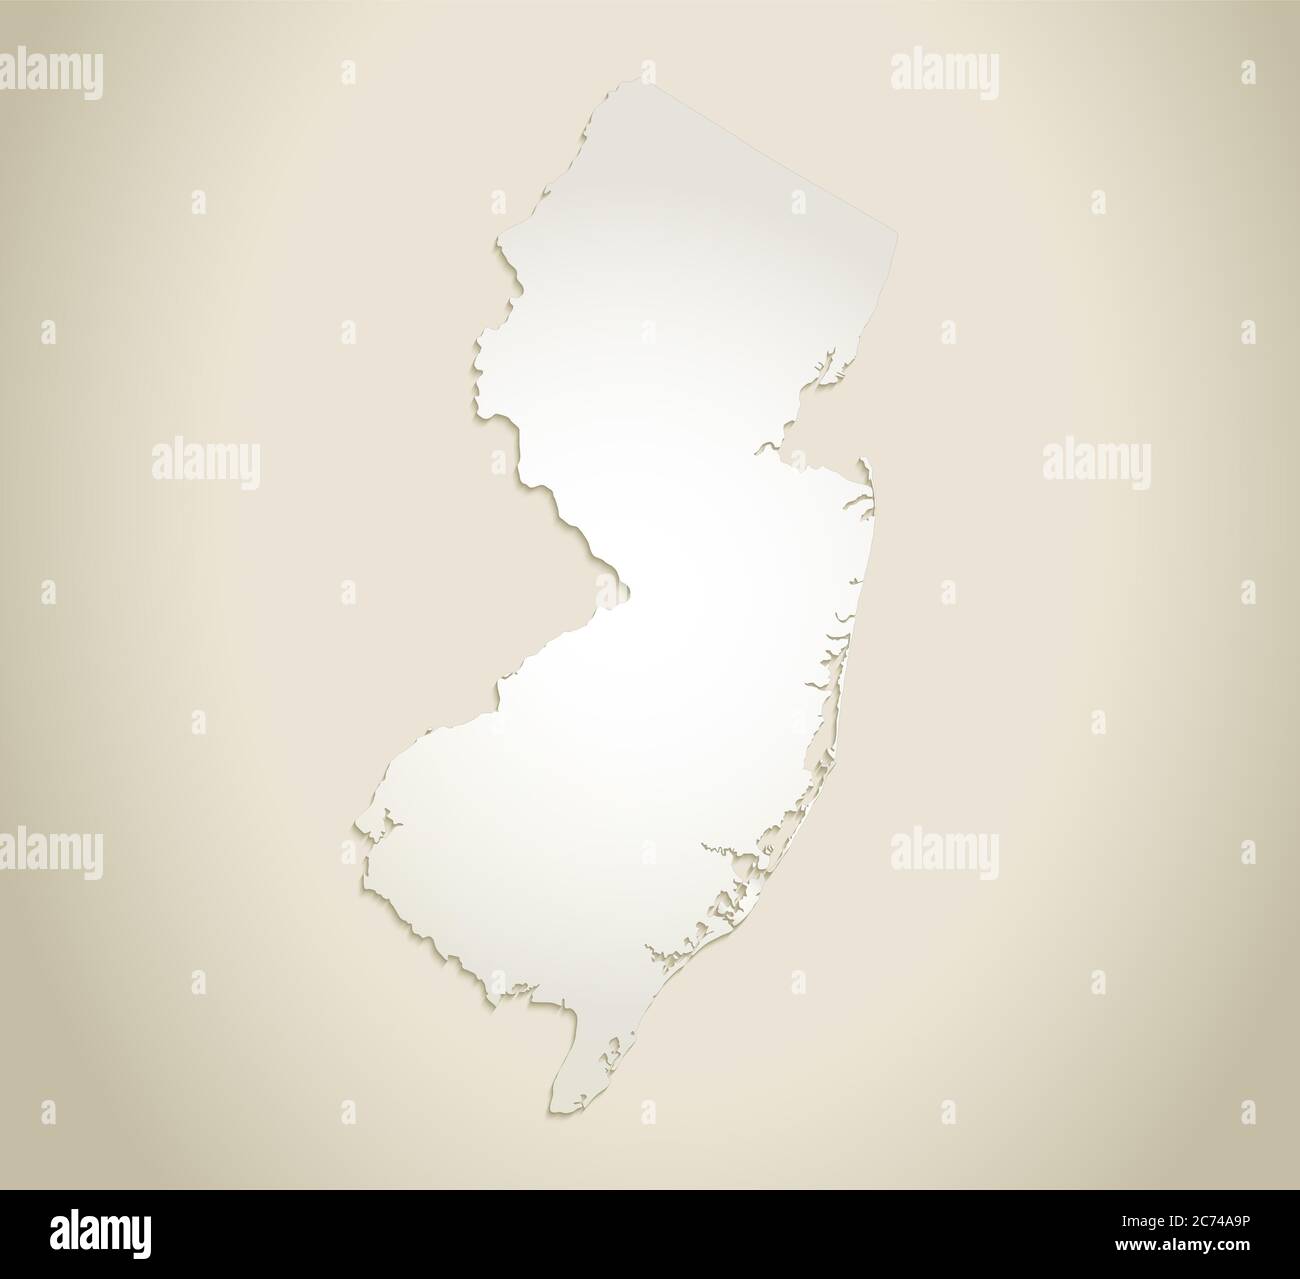 Mapa de Nueva Jersey, fondo de papel viejo en blanco Foto de stock